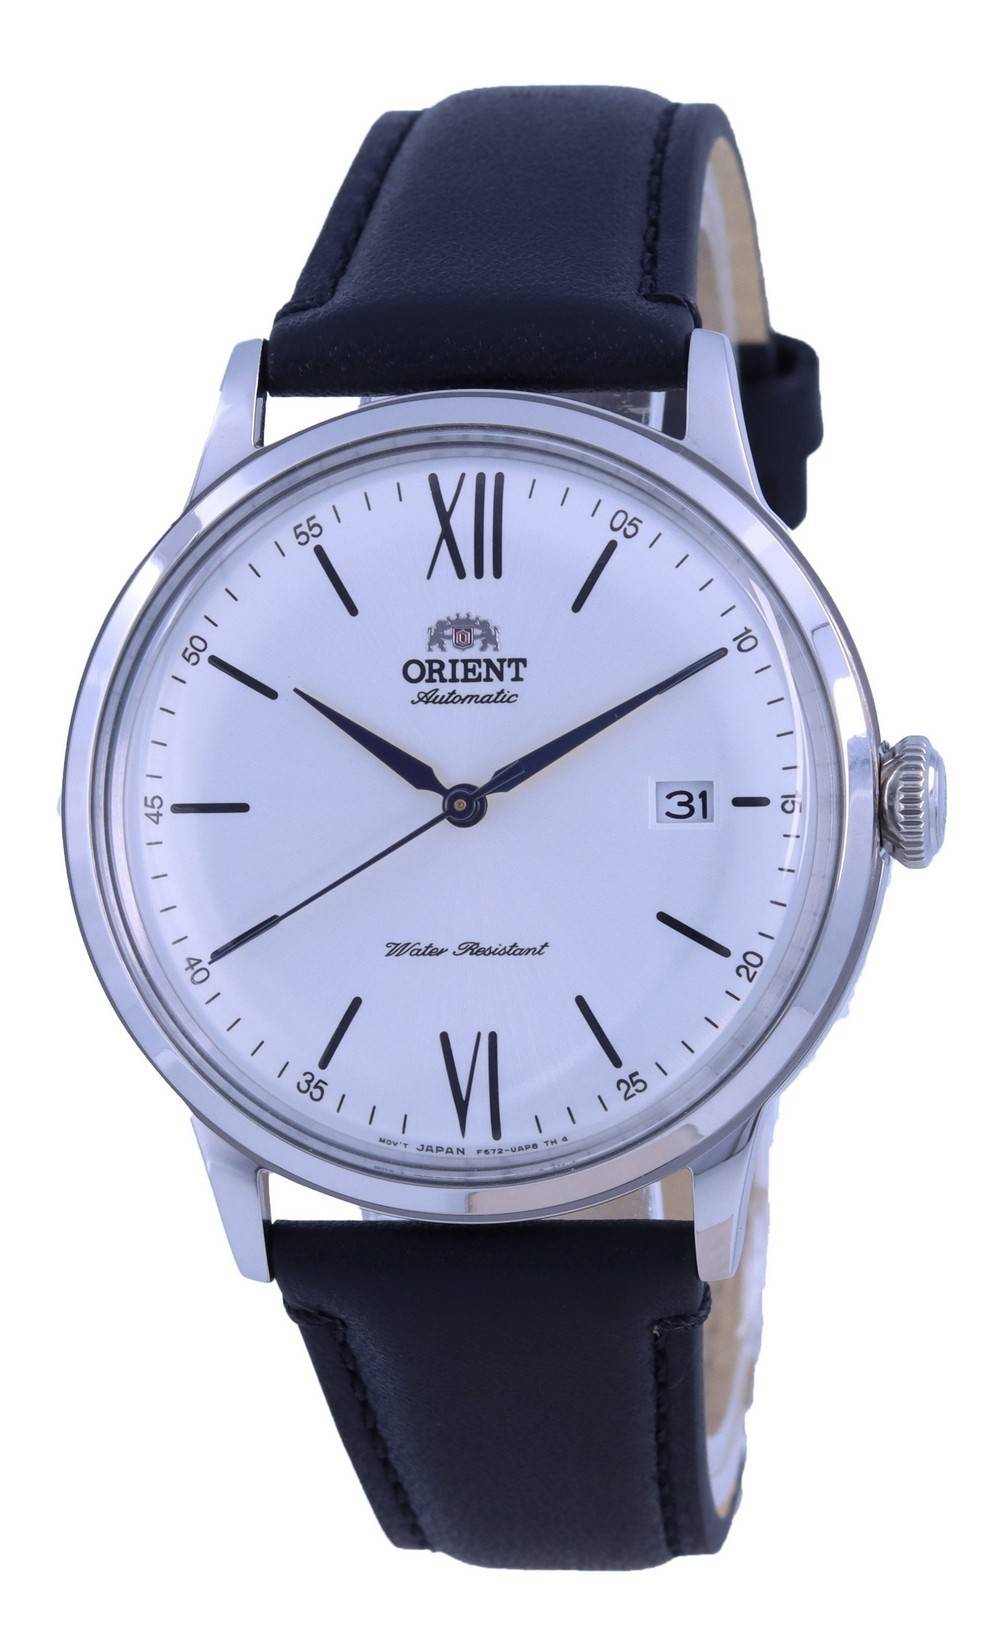 Reloj Orient deportivo automático para hombre multifunción FXC00001B0.